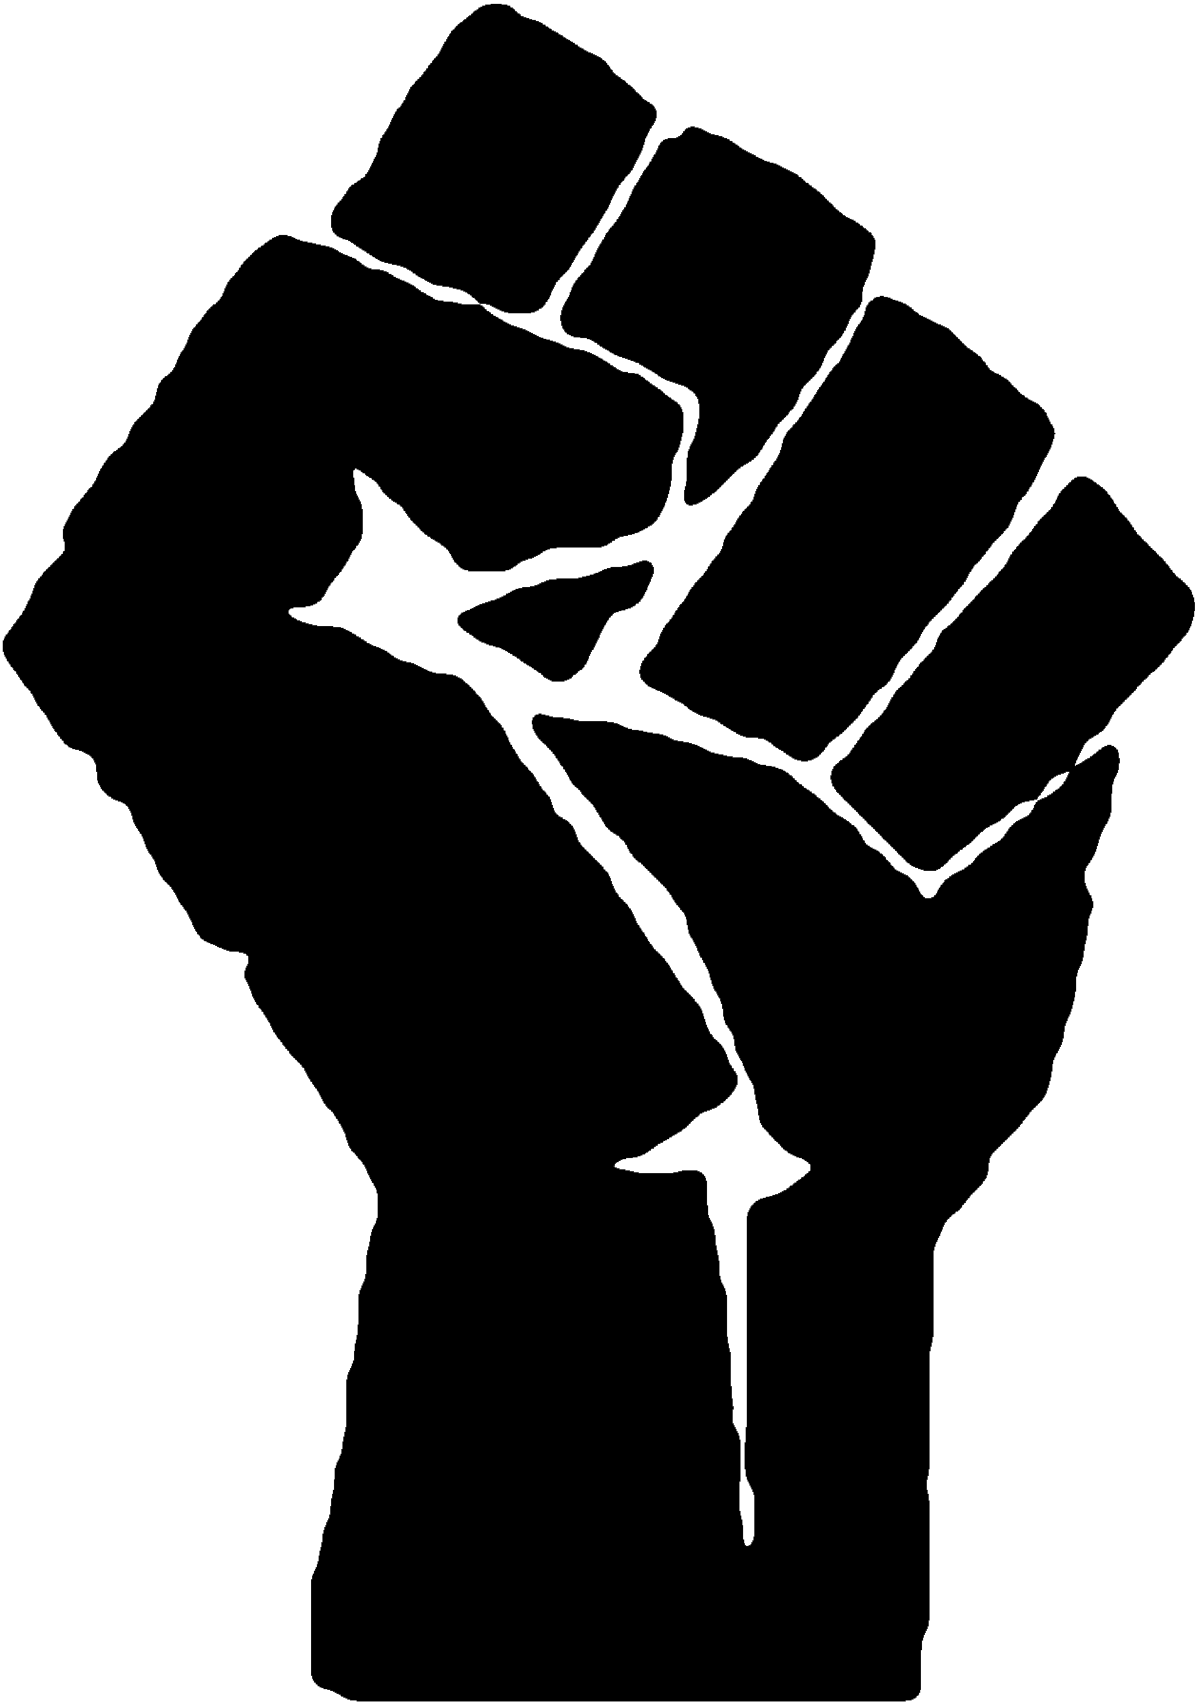 Black Hand Logo - Raised fist